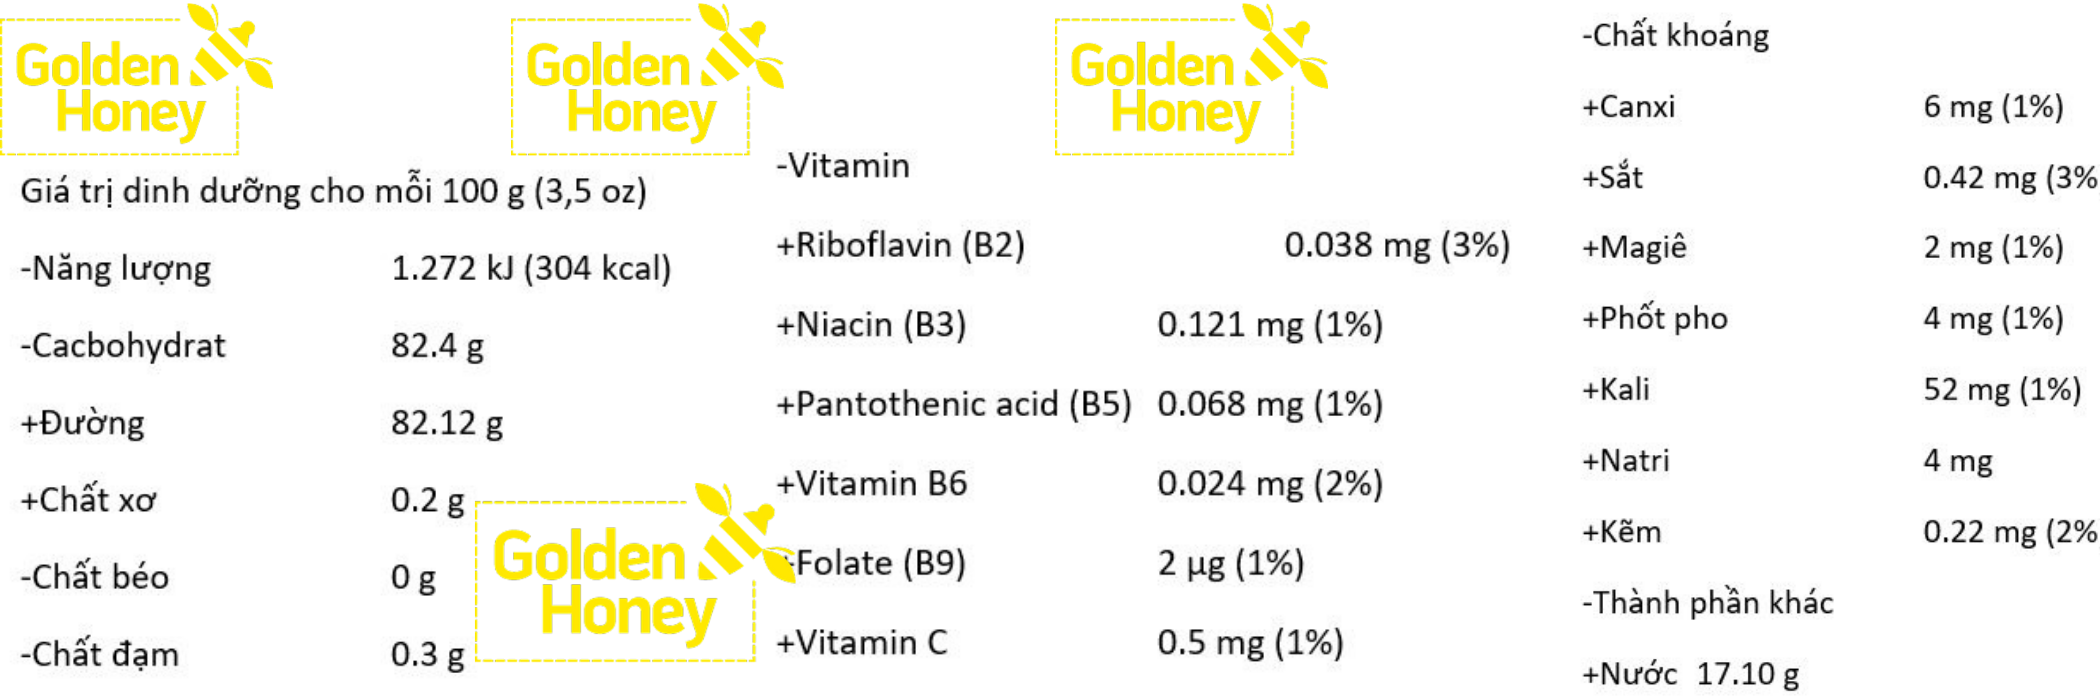 Mật Ong Nguyên Chất Hoa Cà Phê Golden Honey- Tốt Cho Sức Khỏe Tăng Hệ Miễn Dịch, Hỗ Trợ Chữa Dứt Điểm Ho, Giảm Nguy Cơ Bệnh Tim Mạch, Hỗ Trợ Giảm Mụn Trứng Cá, Sáng Đẹp Da Và Môi, Chế Biến Nhiều Thức Uống Và Món Ăn Ngon Bổ Dưỡng - 2 Chai x 500ml 4